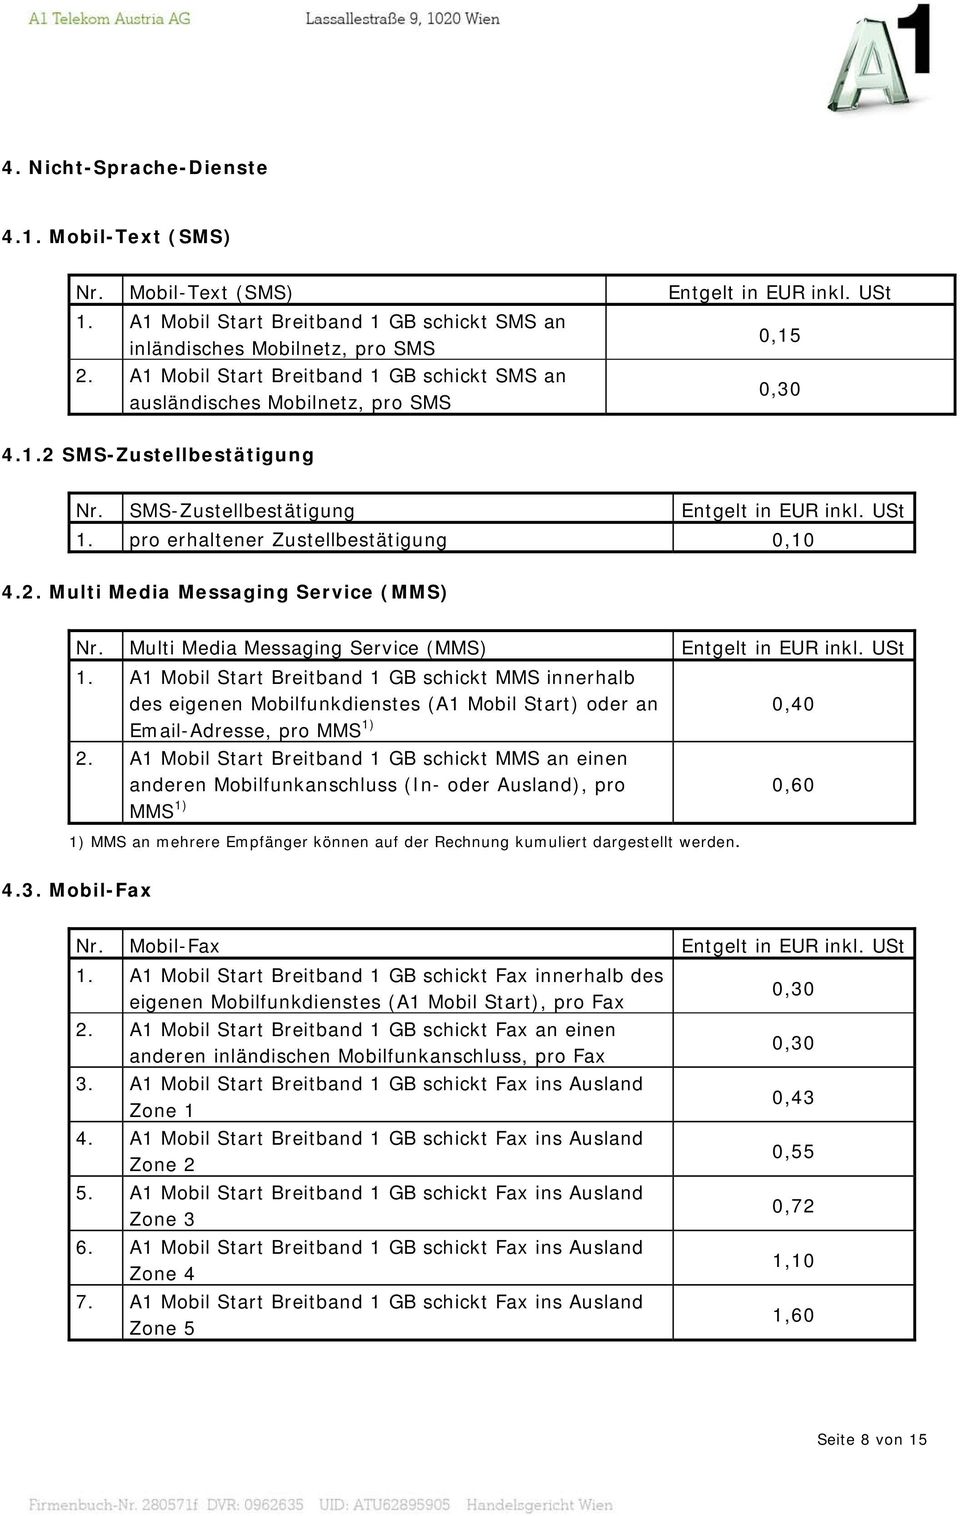 Multi Media Messaging Service (MMS) 1. A1 Mobil Start Breitband 1 GB schickt MMS innerhalb des eigenen Mobilfunkdienstes (A1 Mobil Start) oder an Email-Adresse, pro MMS 1) 0,40 2.